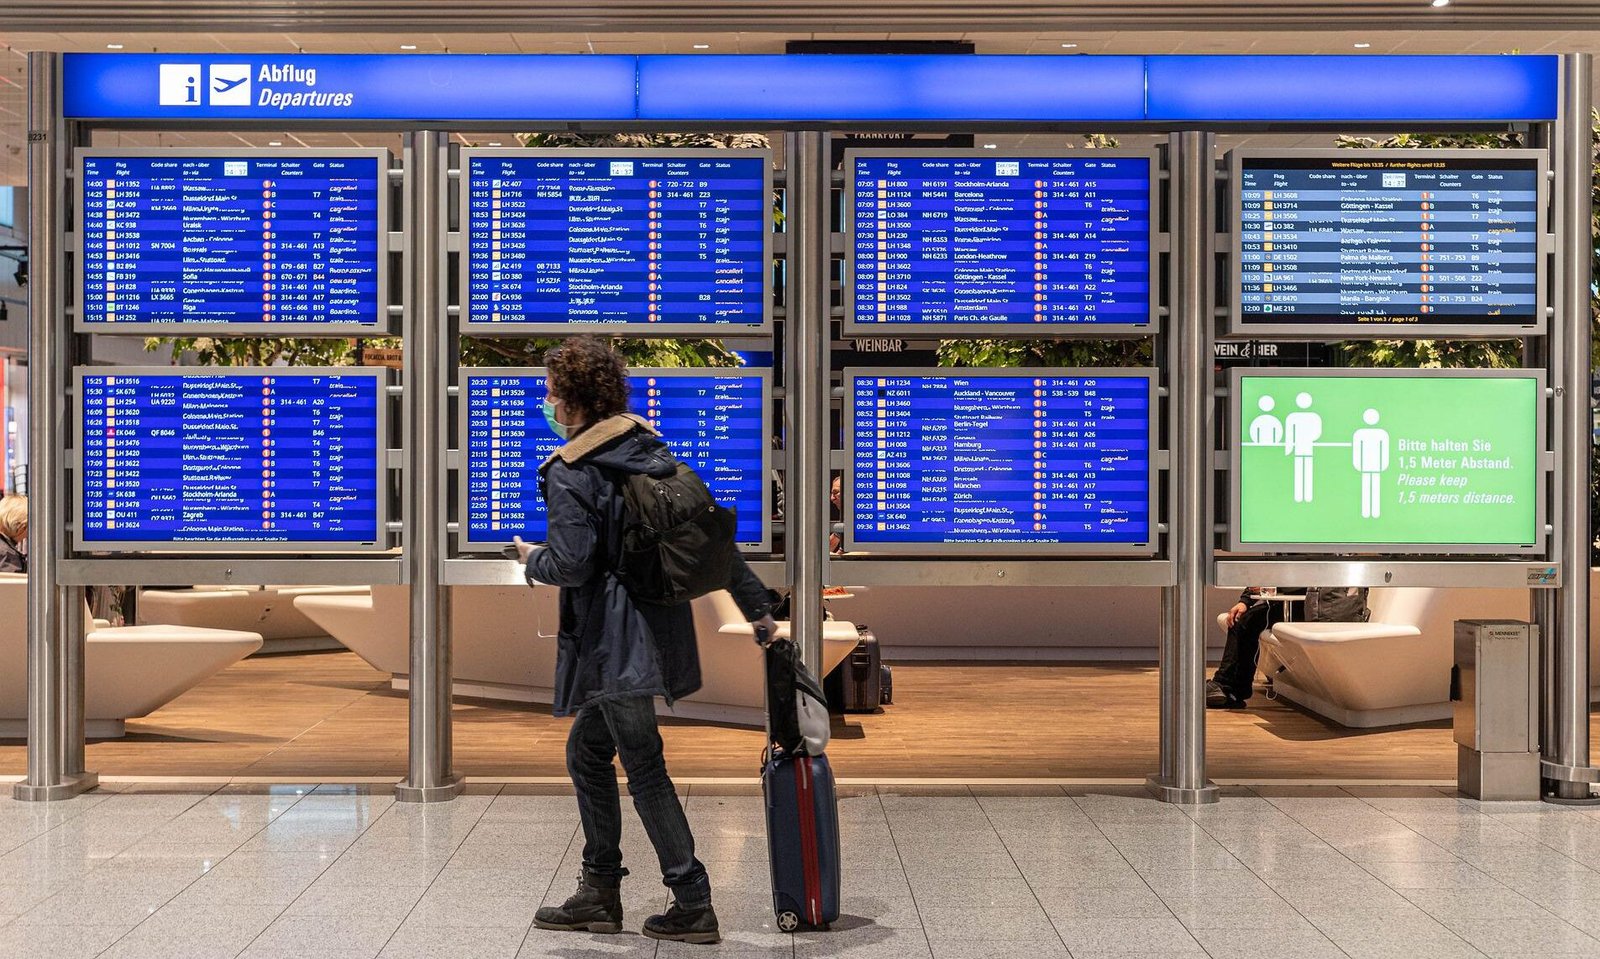 mascarillas dejan de ser obligatorias en aviones y aeropuertos union europea